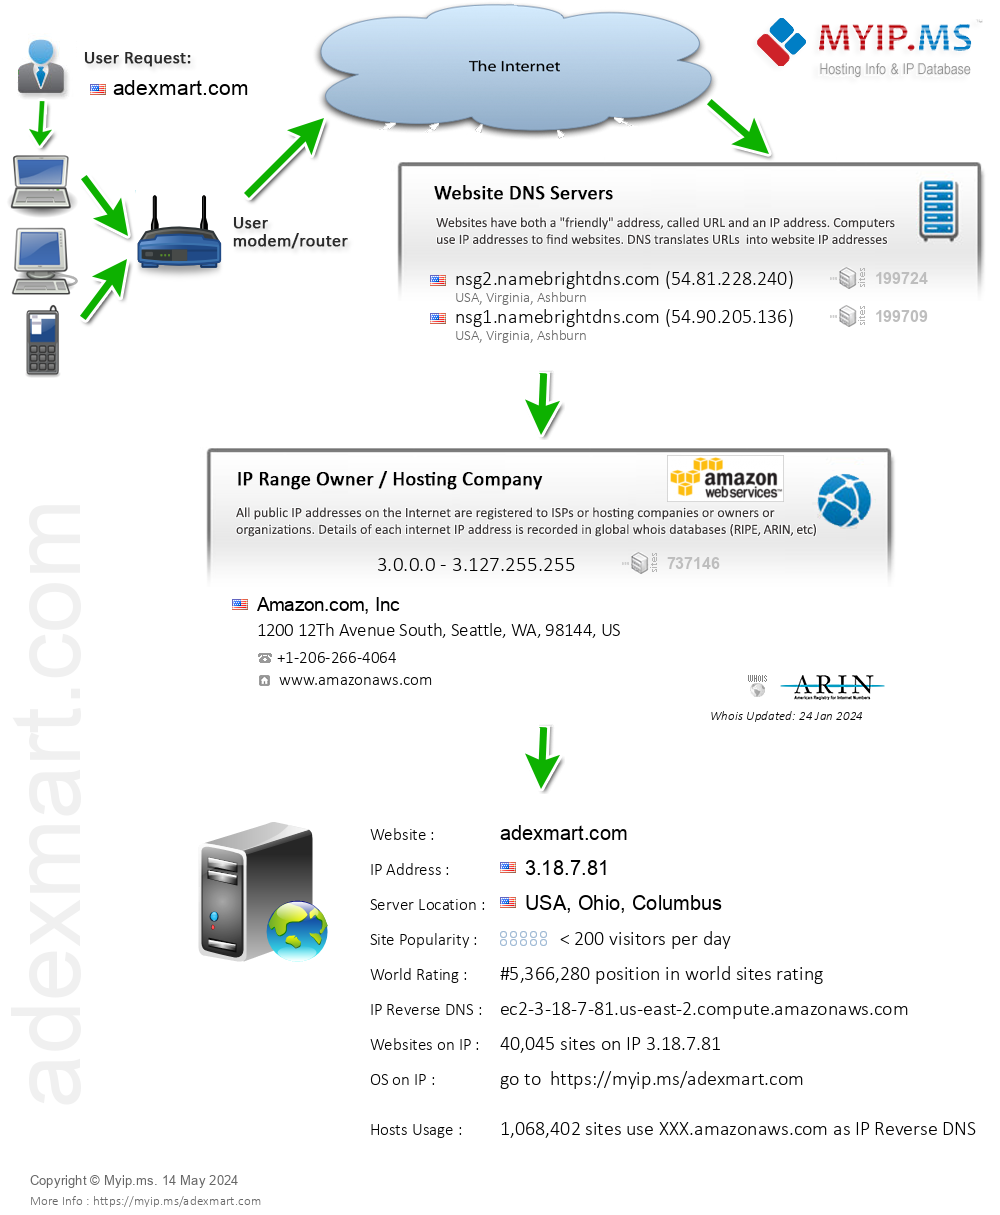 Adexmart.com - Website Hosting Visual IP Diagram